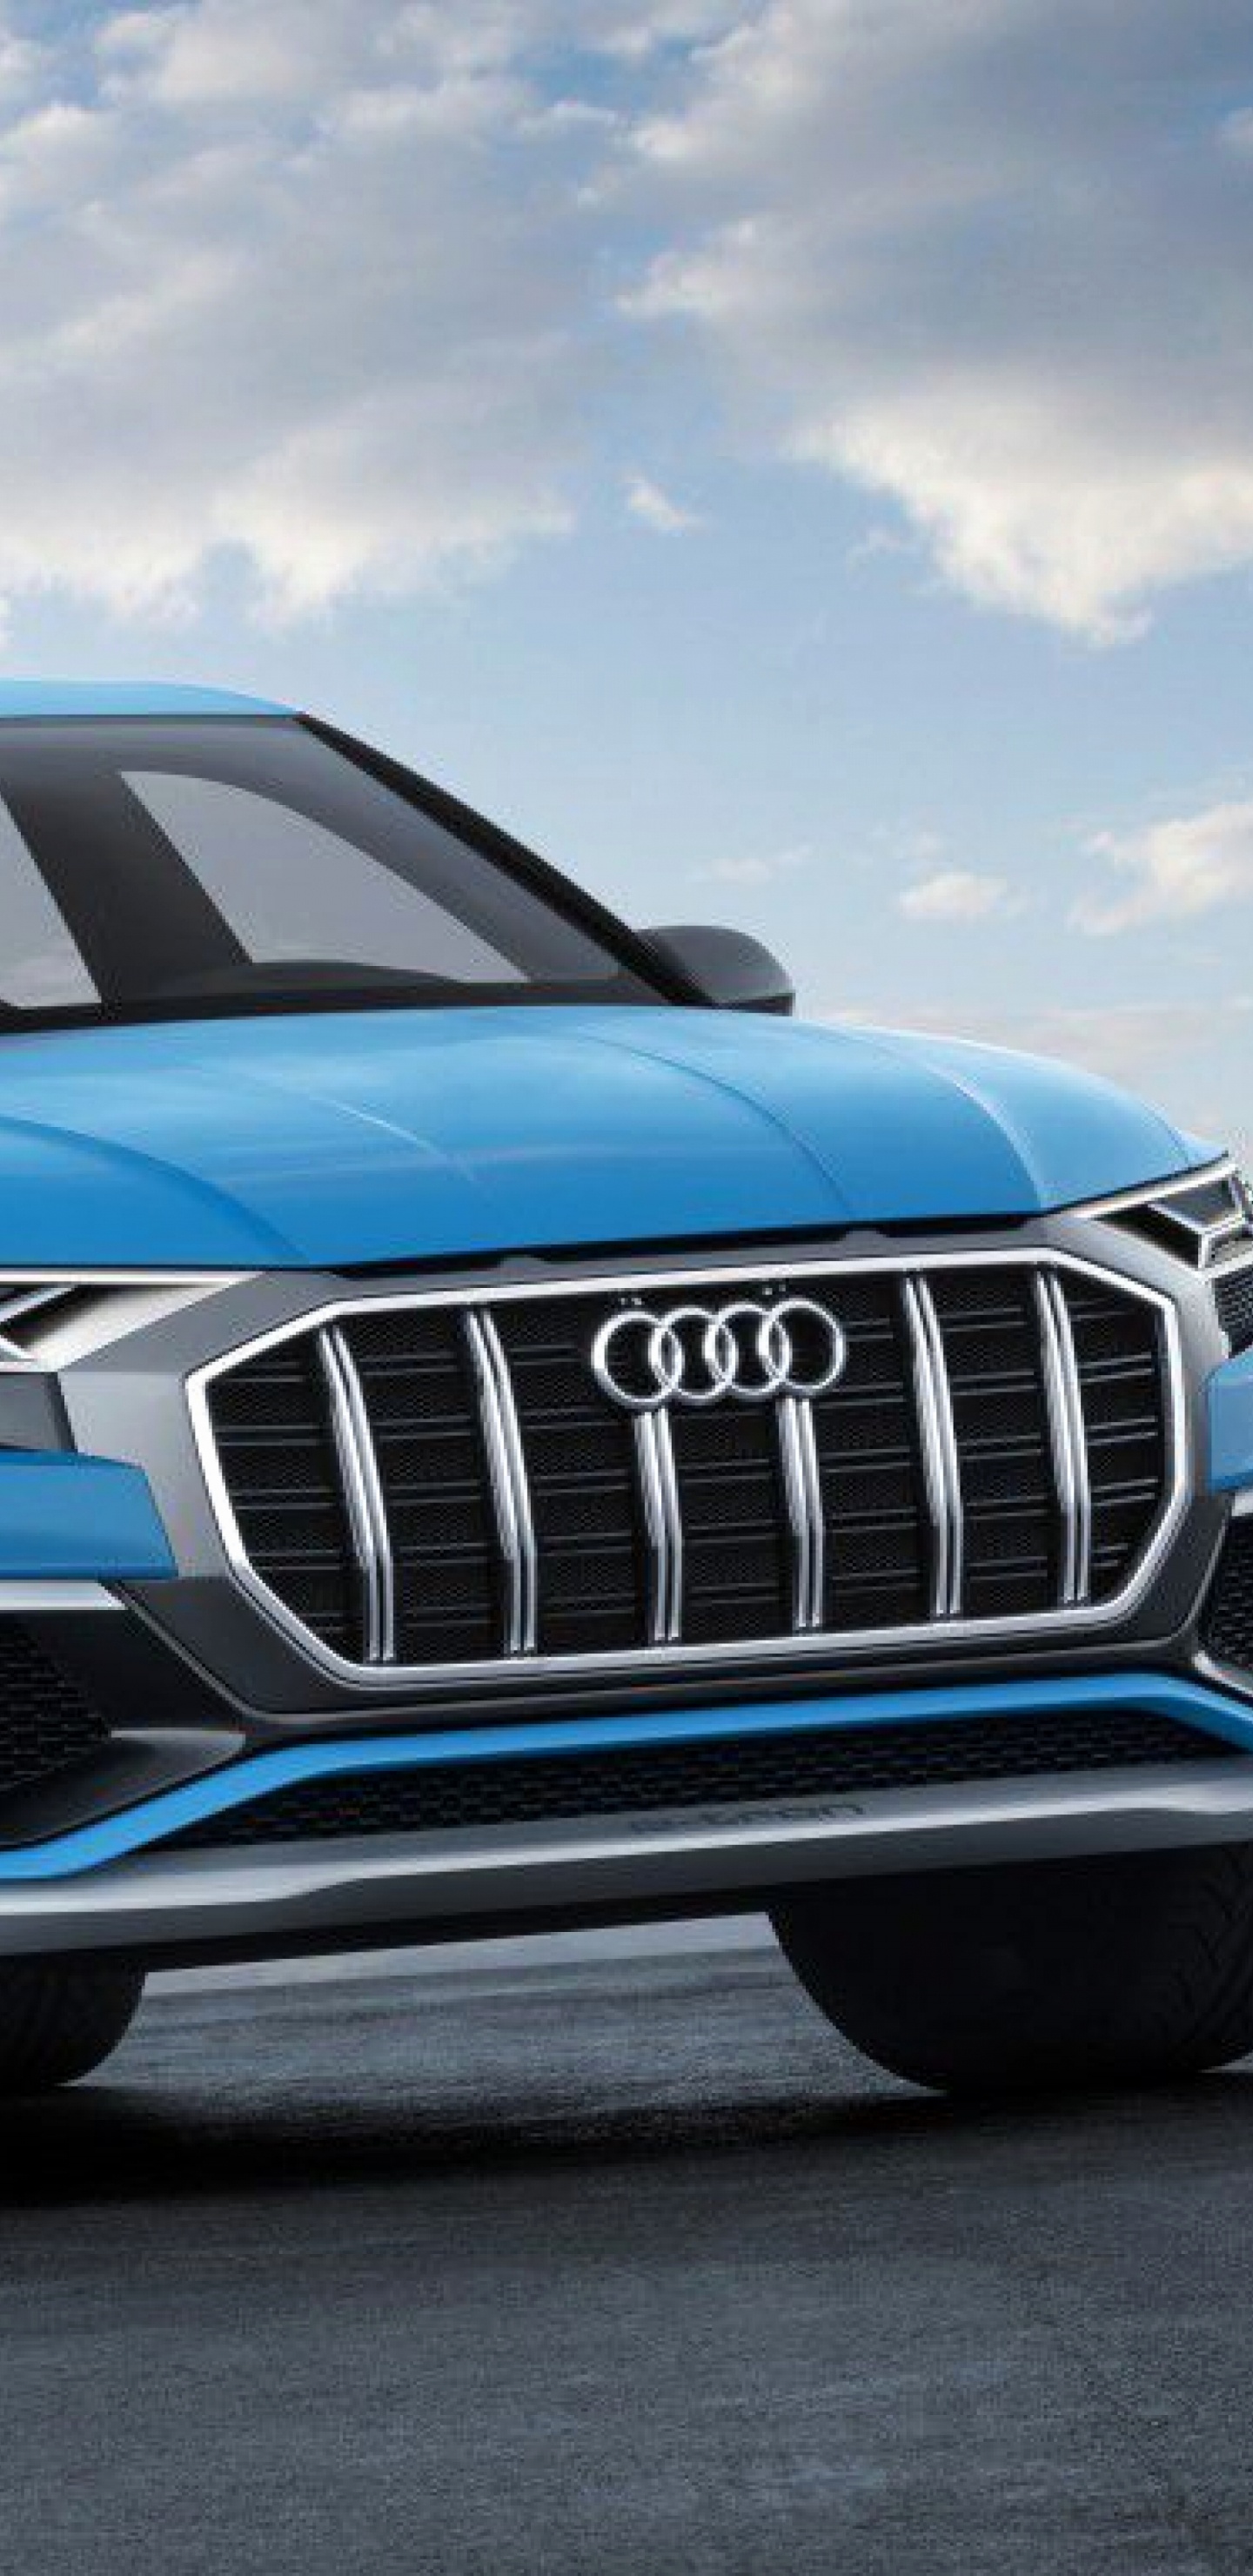 Audi a 4 Azul en la Carretera Durante el Día. Wallpaper in 1440x2960 Resolution